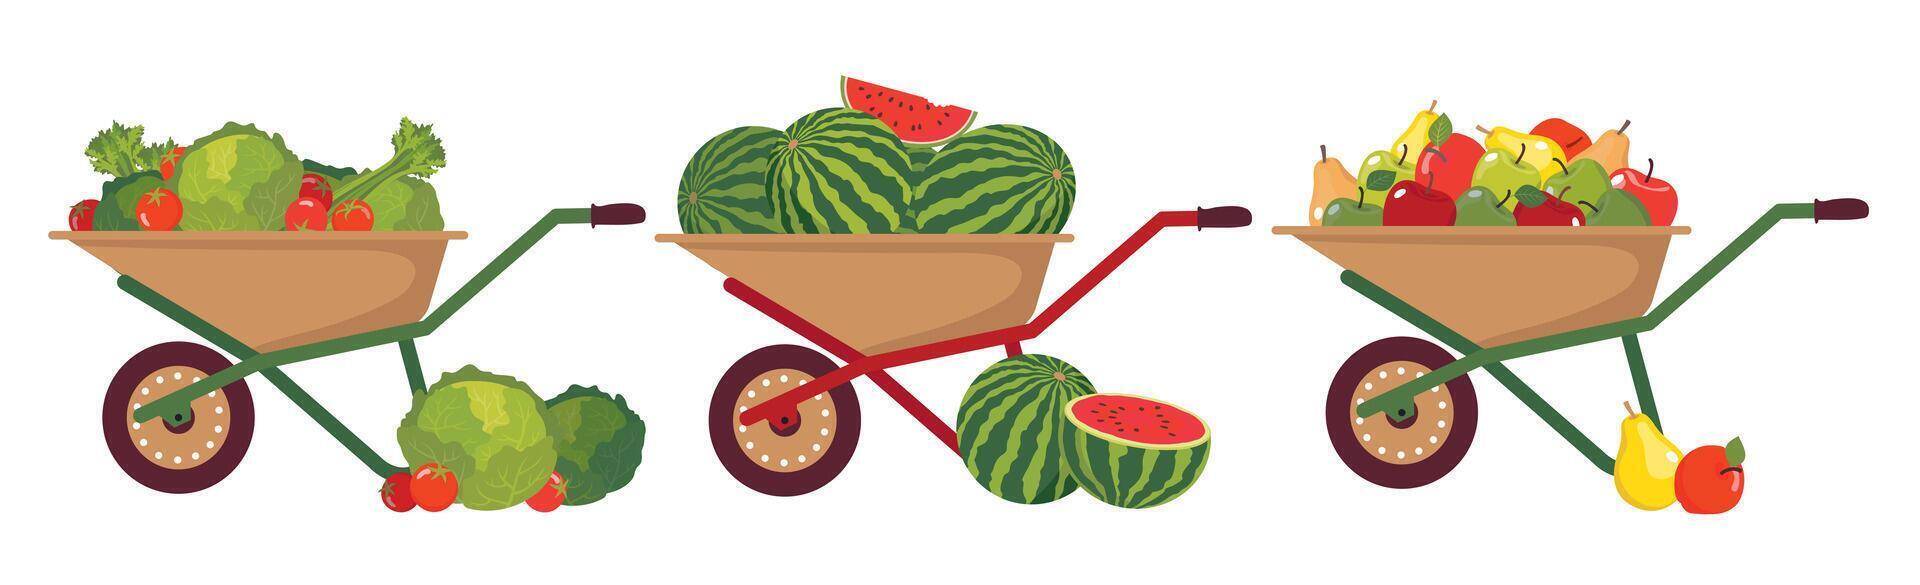 en uppsättning av kärror för transport de skörda av frukt och grönsaker. olika frukt och grönsaker i trädgård skottkärror. kärror med en skörda av päron, äpplen, vattenmeloner, kål och morötter. vektor